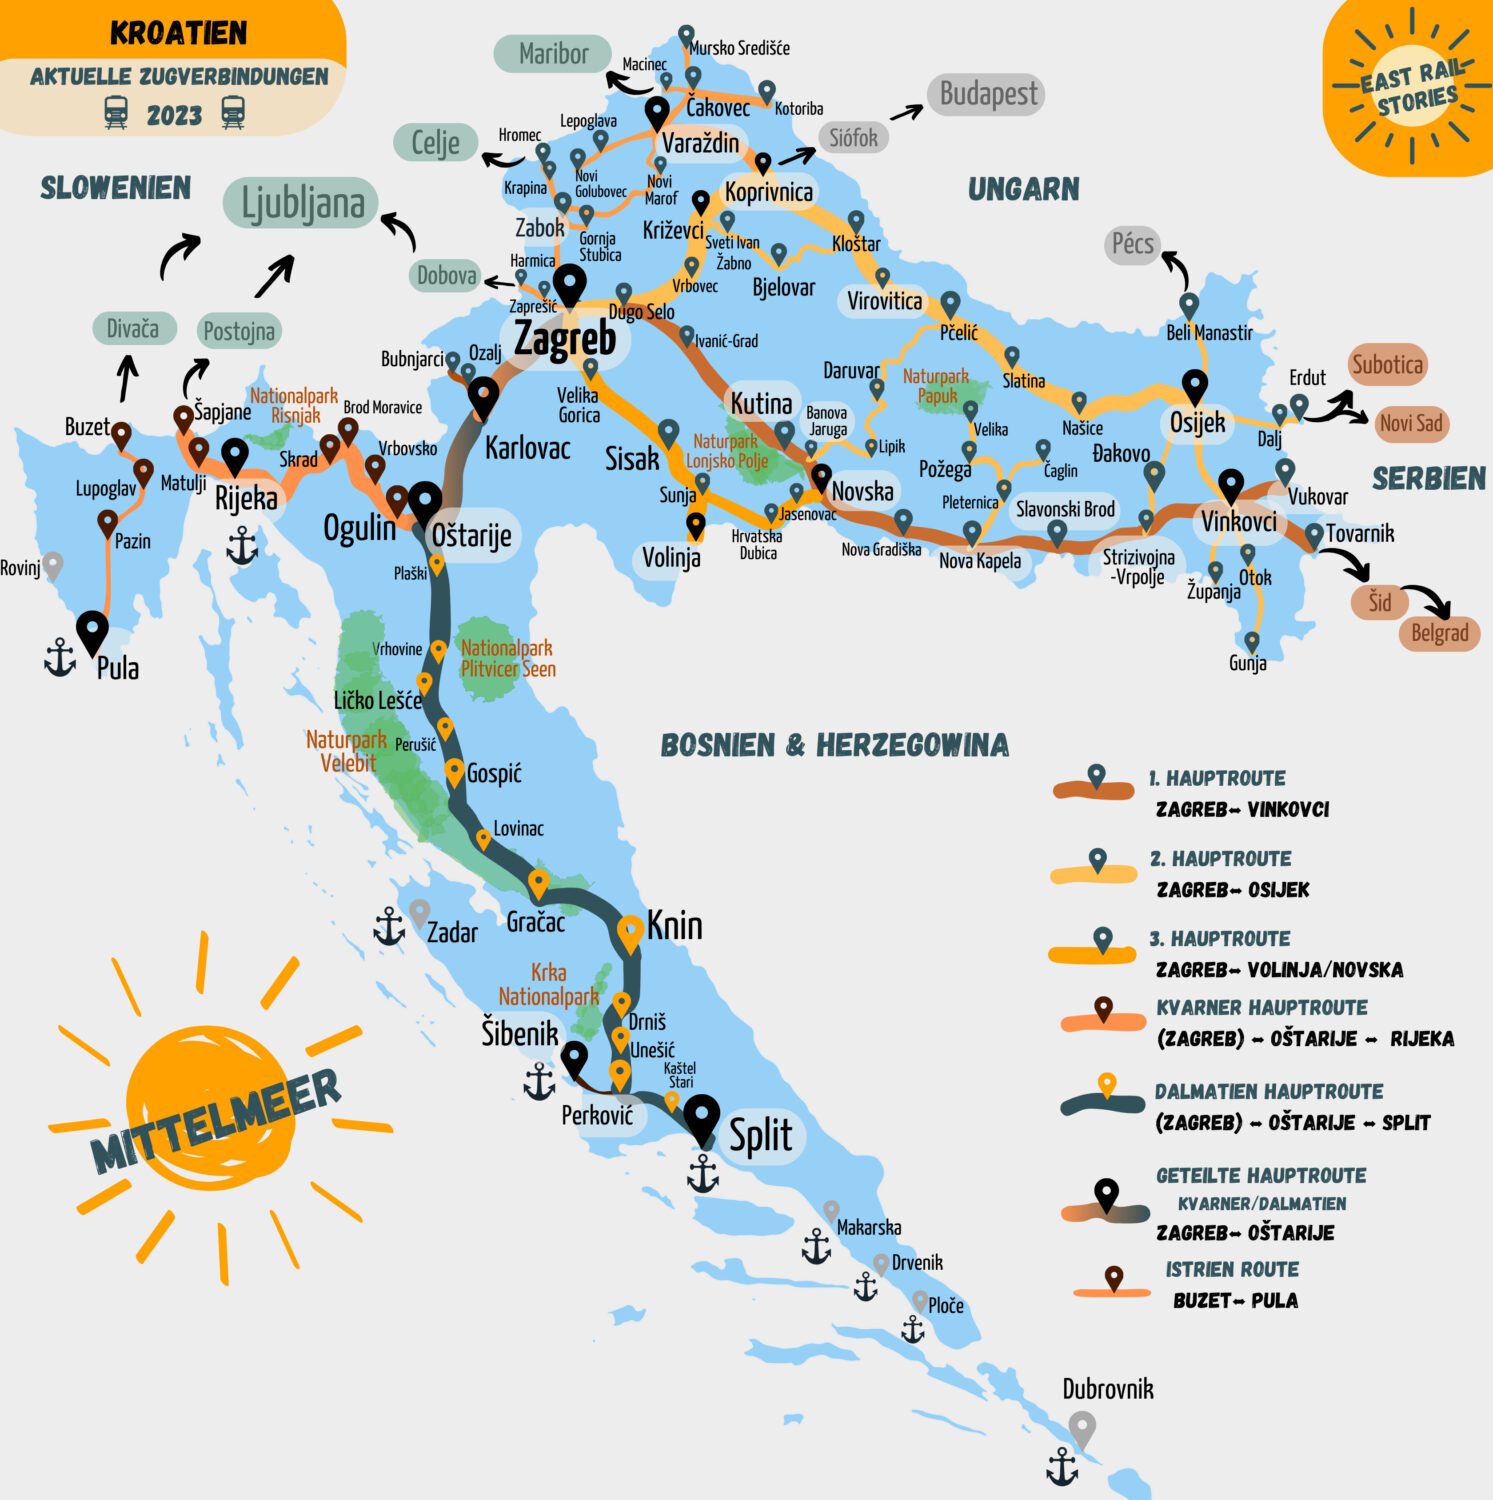 Eisenbahnnetz Kroatien Karte: Aktuelle Zugverbindungen 2023 in allen Landesteilen. Hauptrouten und Nebenrouten sind auf der Karte markiert. East Rail Stories.